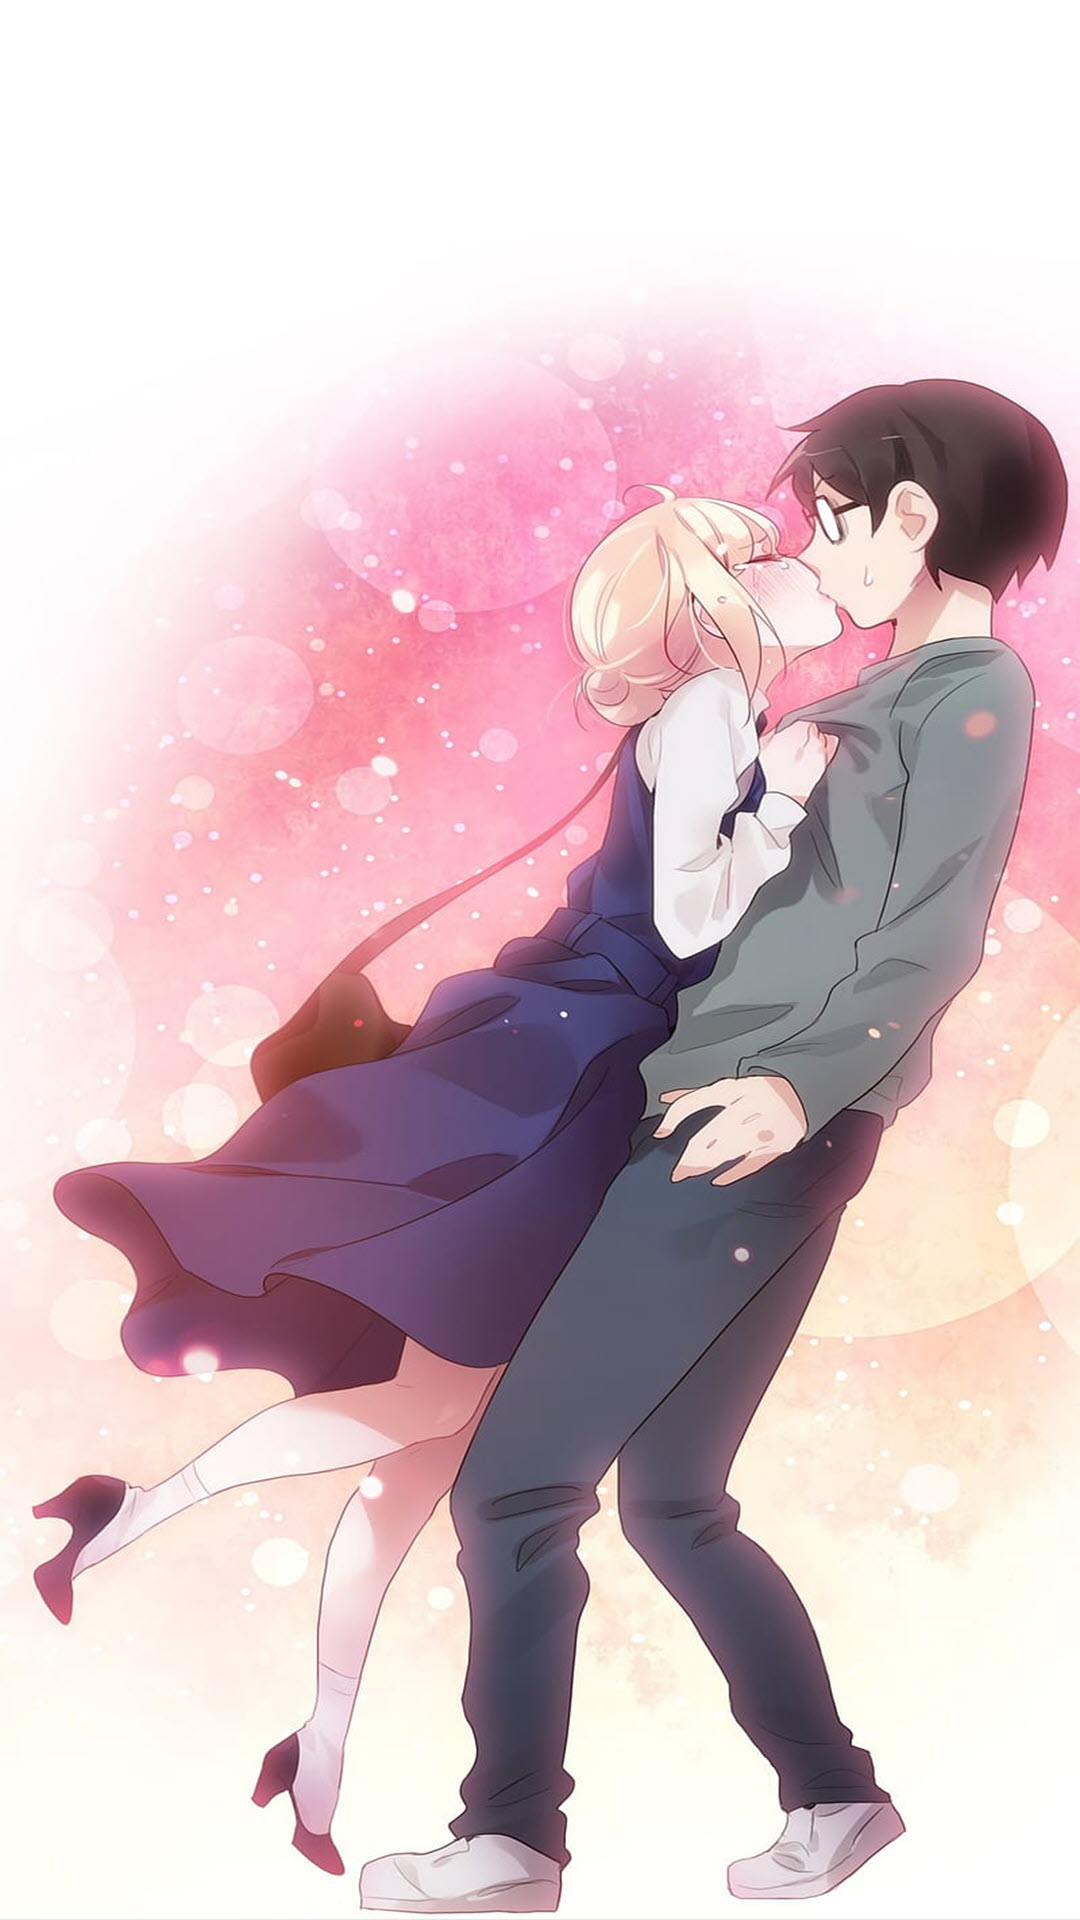 Khám phá hình nền anime cặp đôi đẹp nhất từ trước đến nay. Hình ảnh hòa quyện giữa hai tình nhân với những nét vẽ tinh tế, tạo nên một không gian lãng mạn, ngọt ngào tràn đầy cảm xúc.